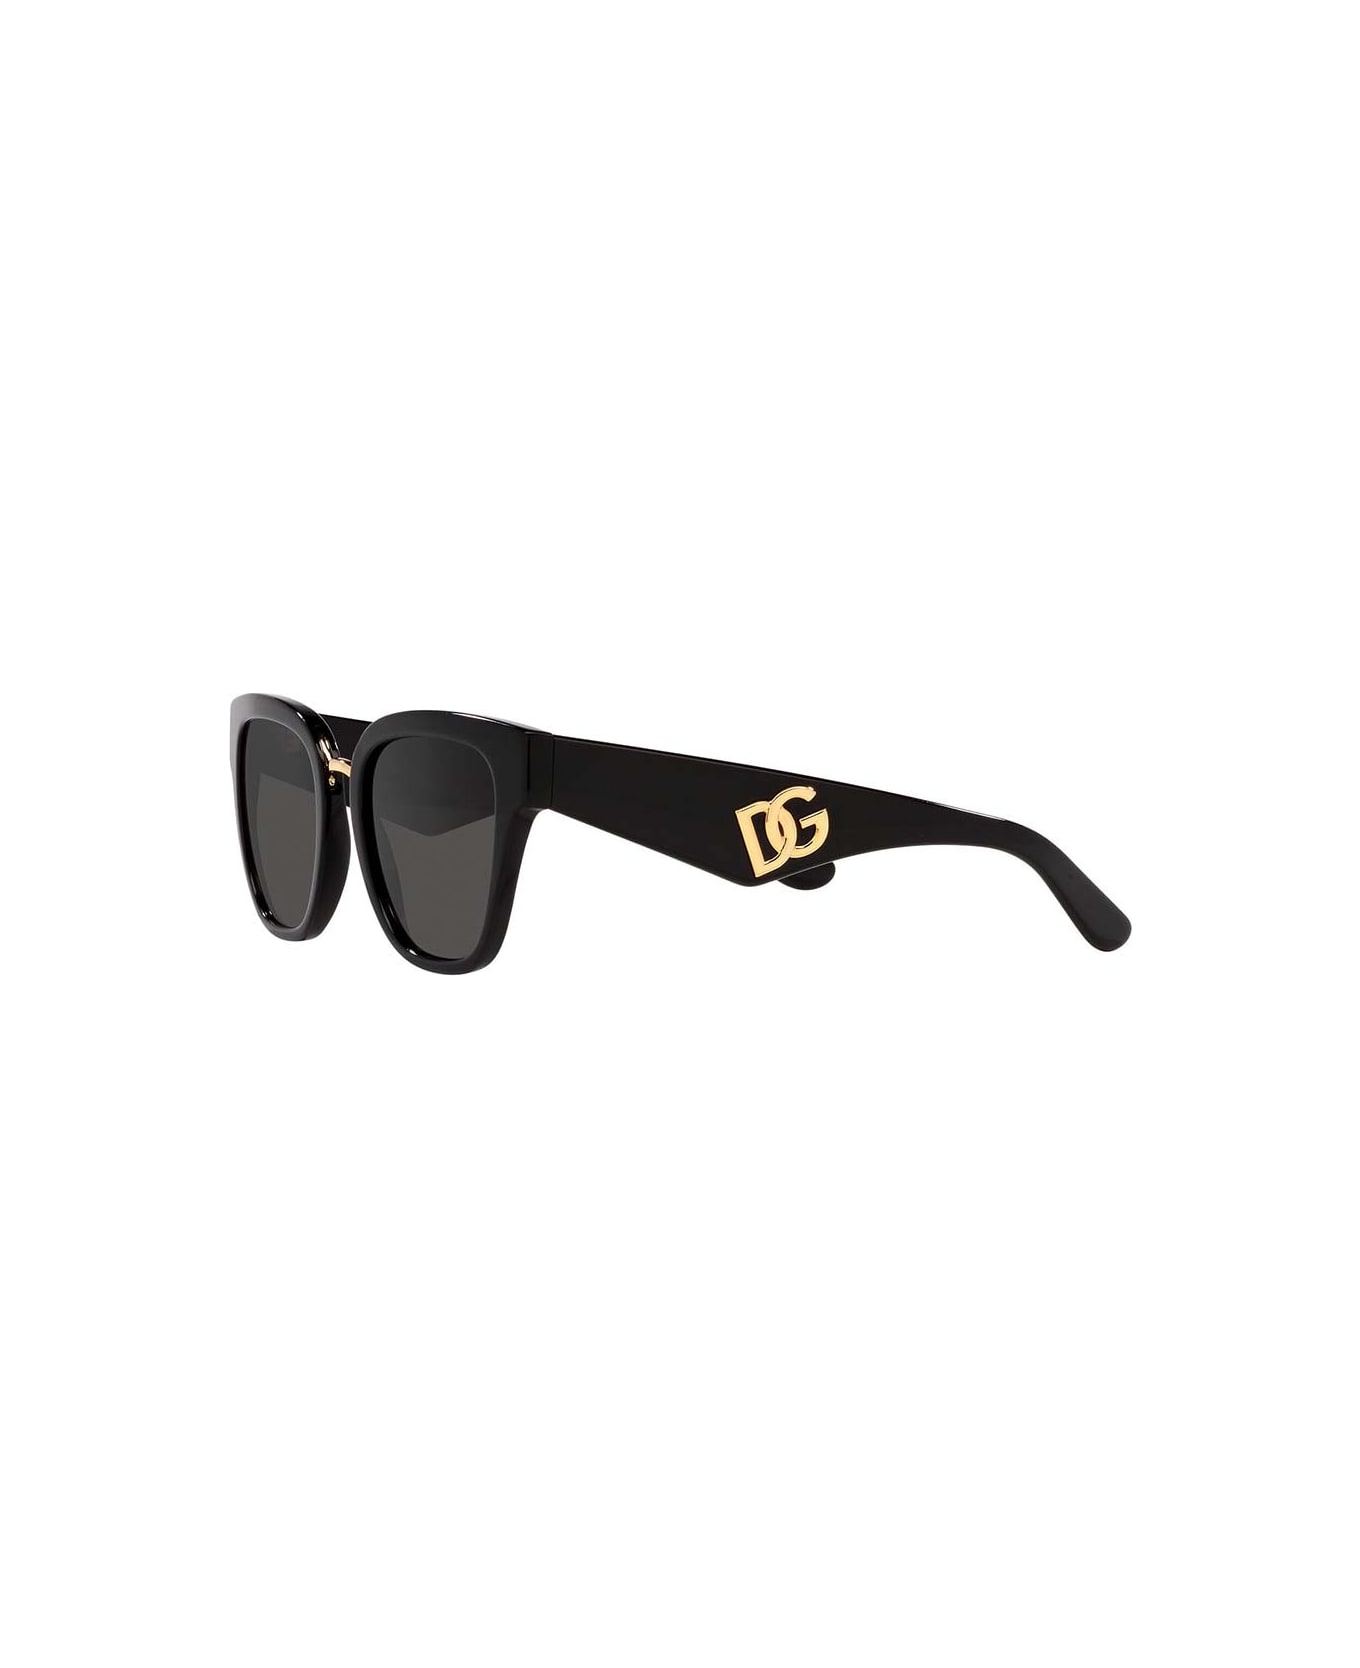 Dolce & Gabbana Eyewear Sunglasses - Nero/Nero